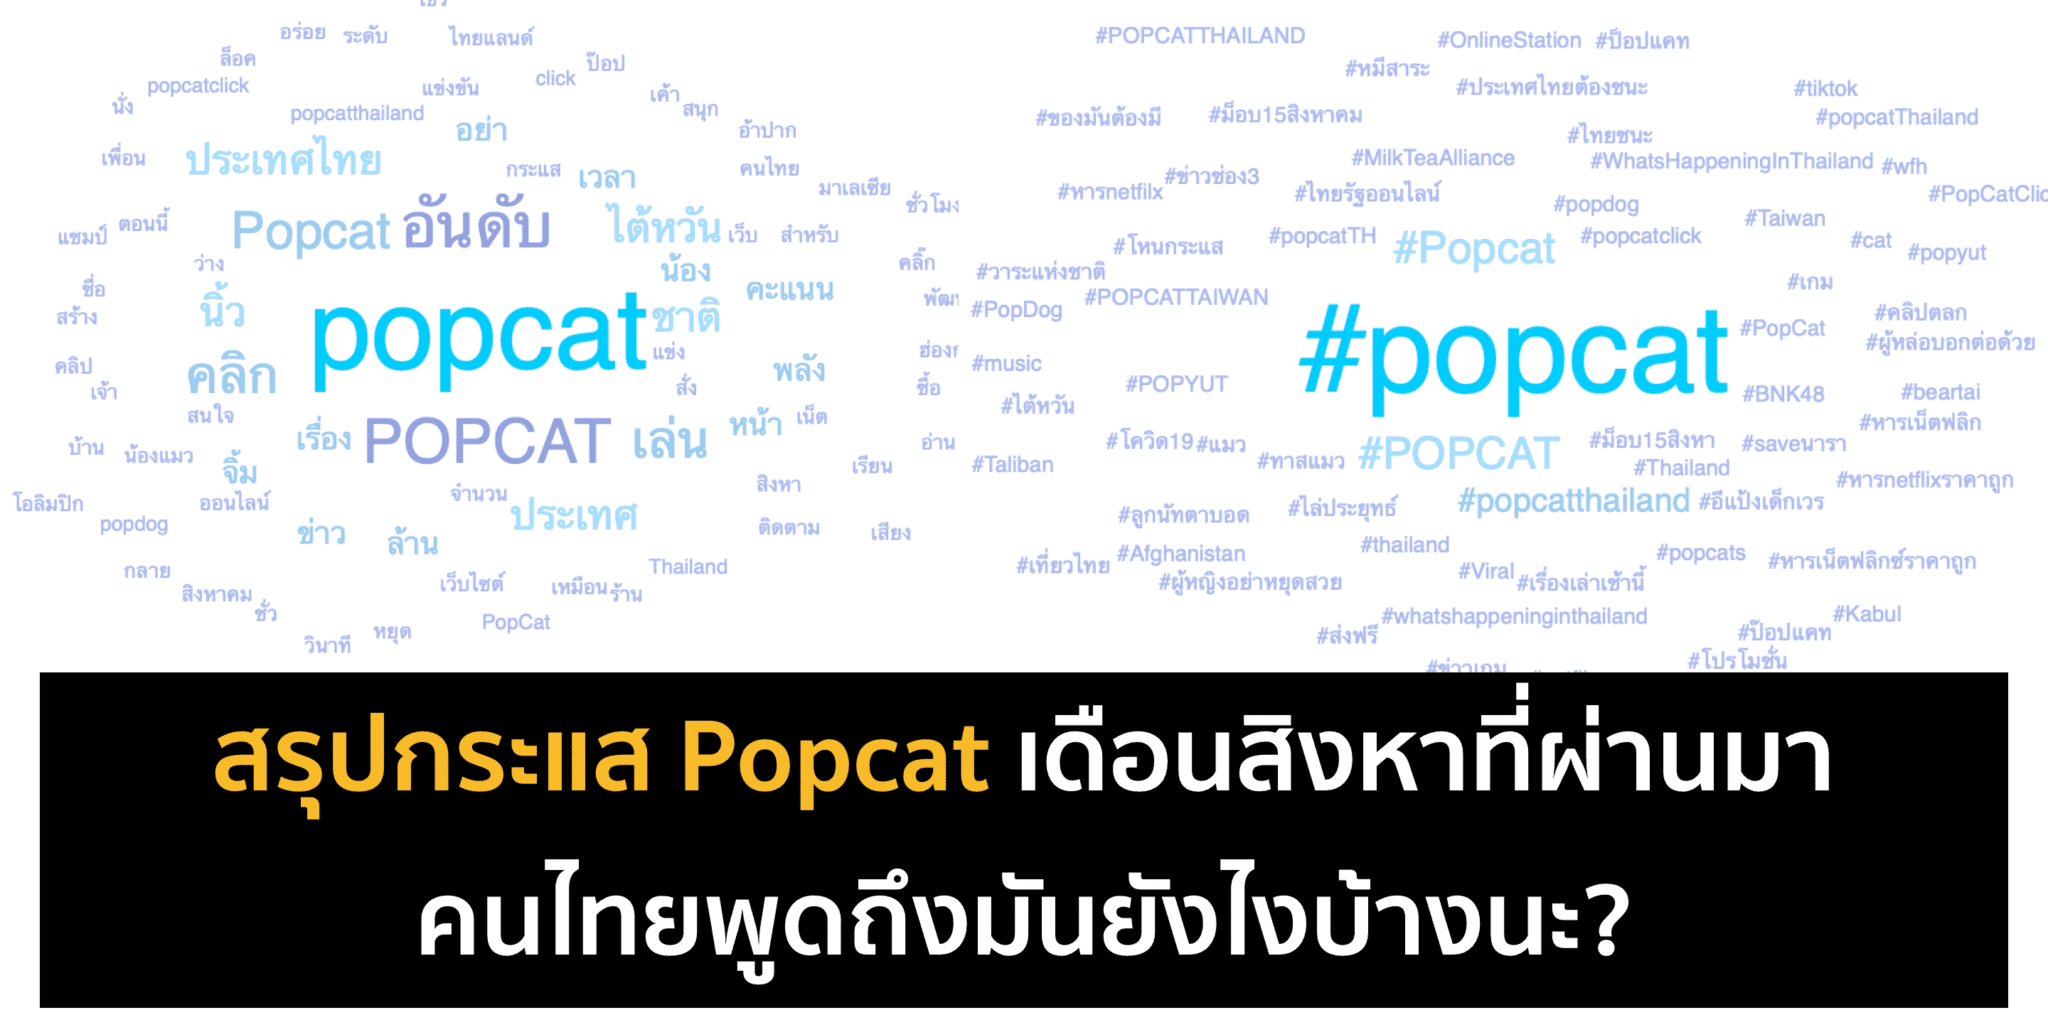 ส่อง Popularity ของ Popcat เดือนสิงหาที่ผ่านมา